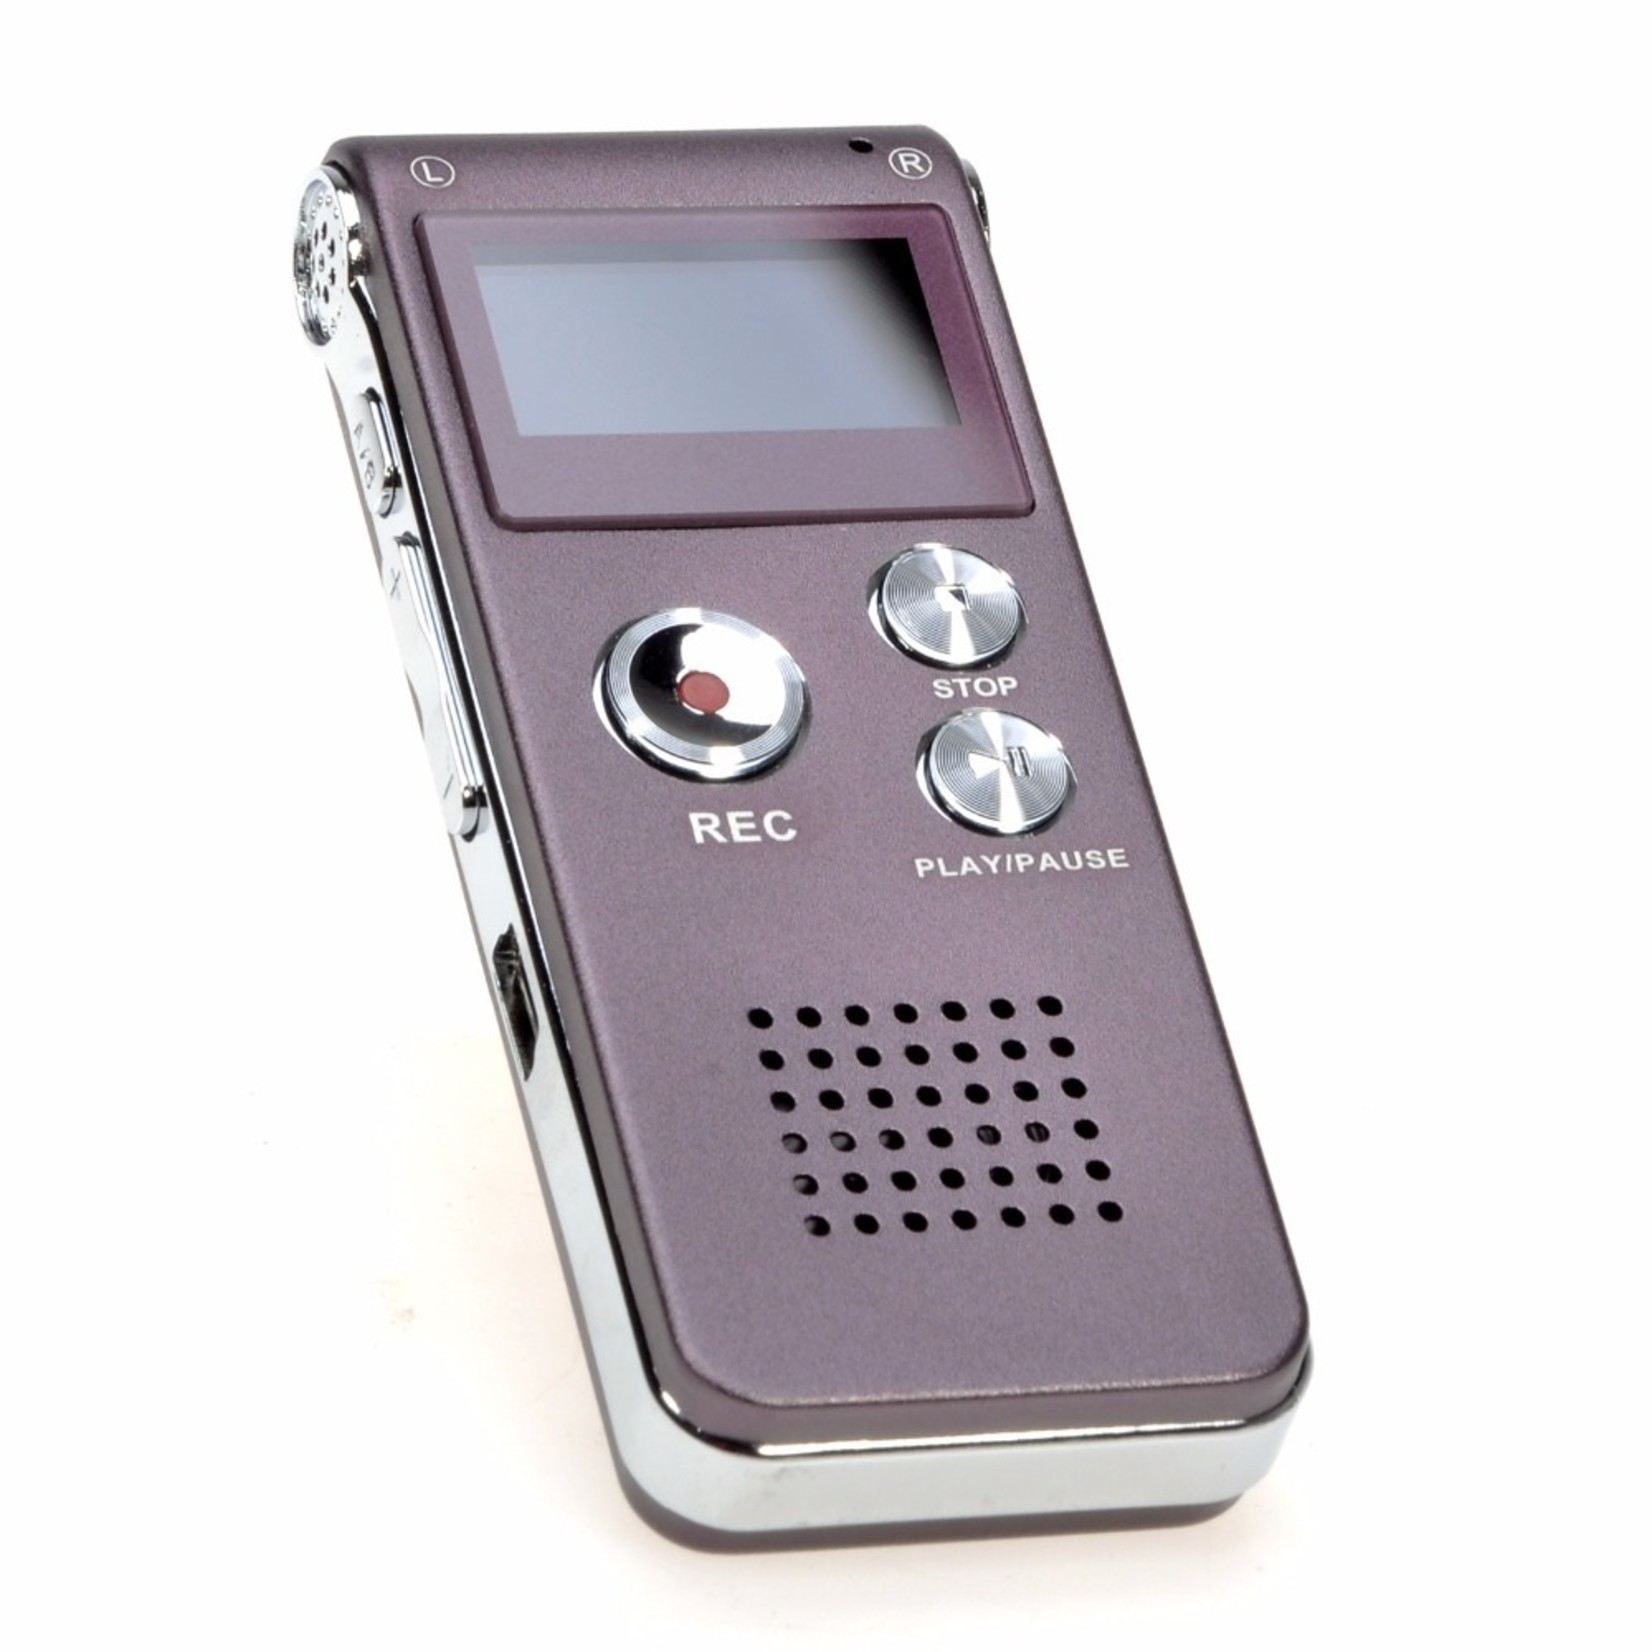 Premium Digitale - Premium Voice Recorder - Multifunctionele Voice Recorder - Dictafoon 16 GB - Audio Memo Recorder Met USB - Spraak Recorder - Sound – Geluid Recorder - Opname Apparaat - Met MP3 Speler Functie – Paars